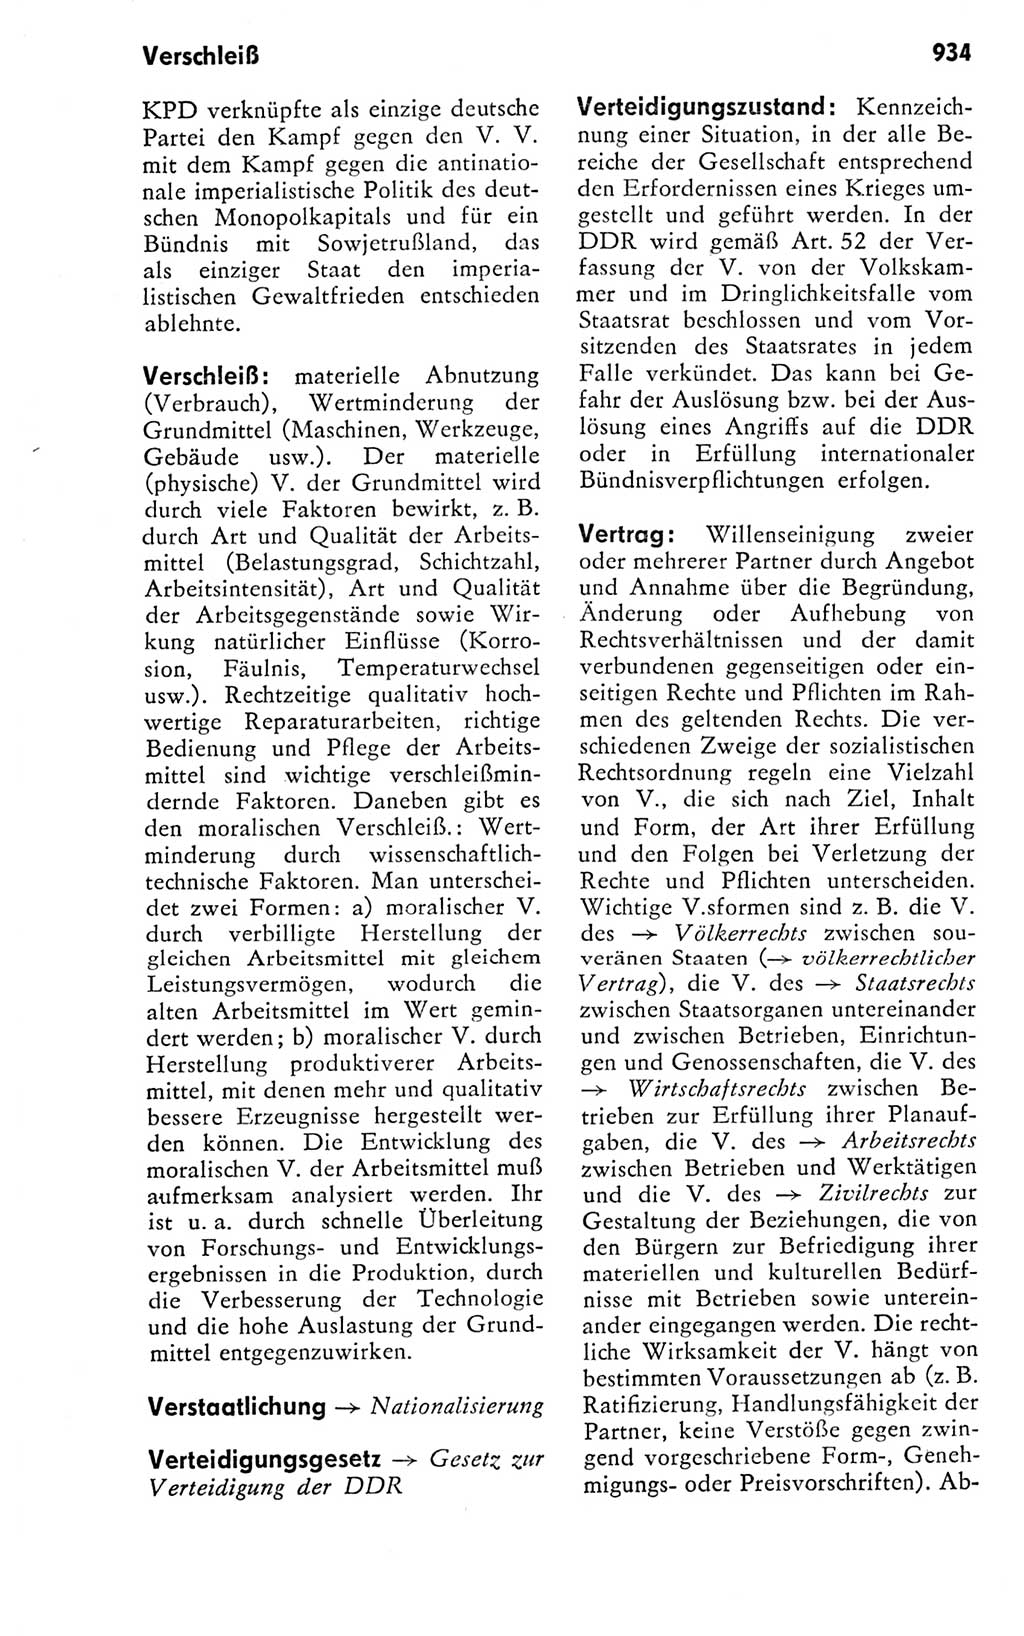 Kleines politisches Wörterbuch [Deutsche Demokratische Republik (DDR)] 1978, Seite 934 (Kl. pol. Wb. DDR 1978, S. 934)